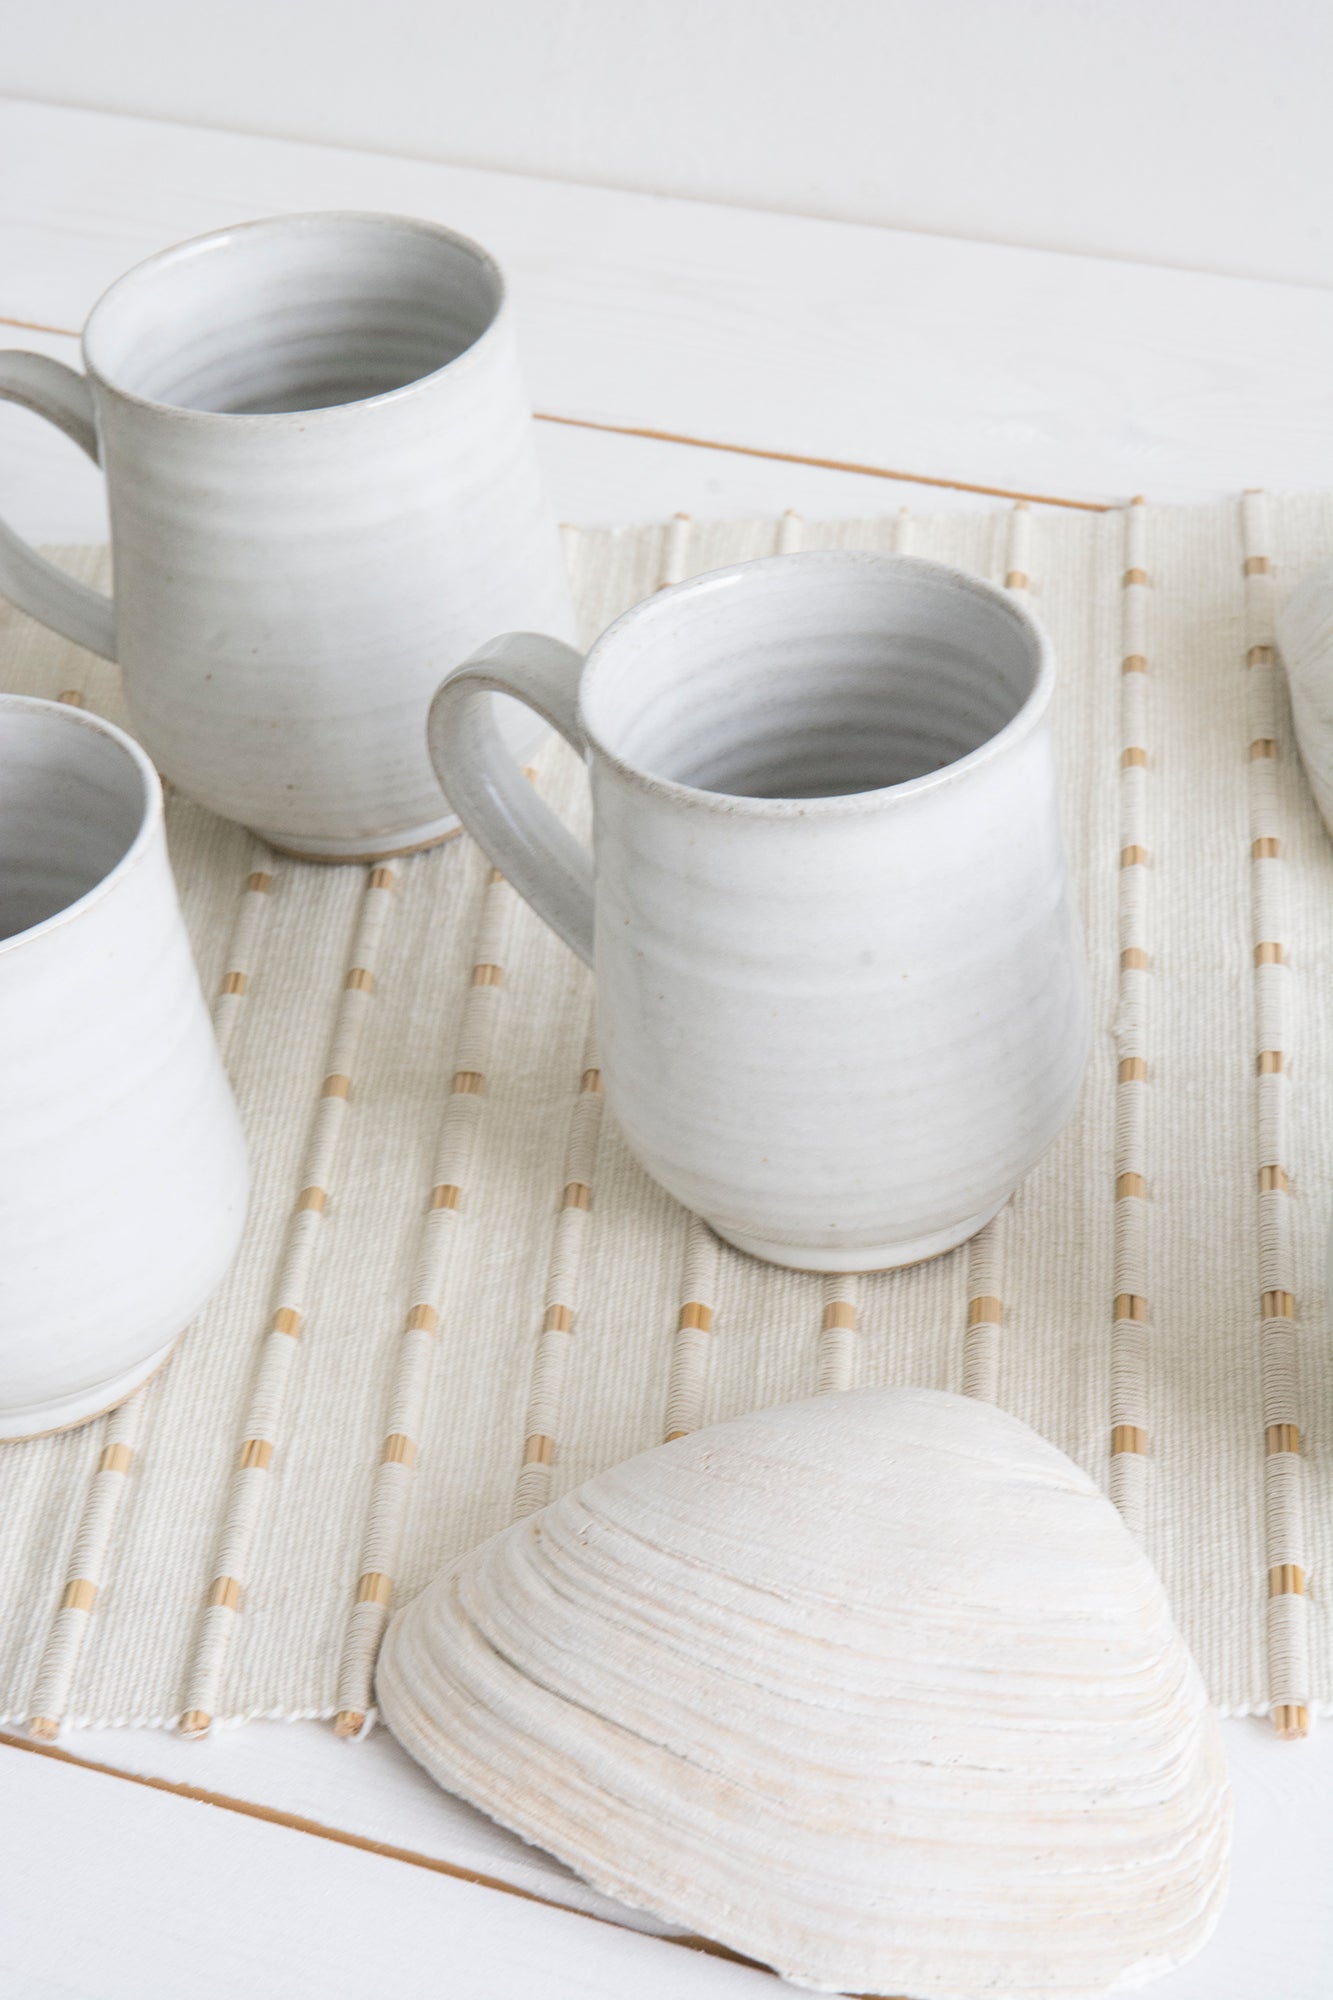 https://www.madaboutpottery.com/cdn/shop/products/set-of-6-pottery-coffee-mugs-in-light-blue-steel-10-fl-oz-411200.jpg?v=1669516032&width=1445